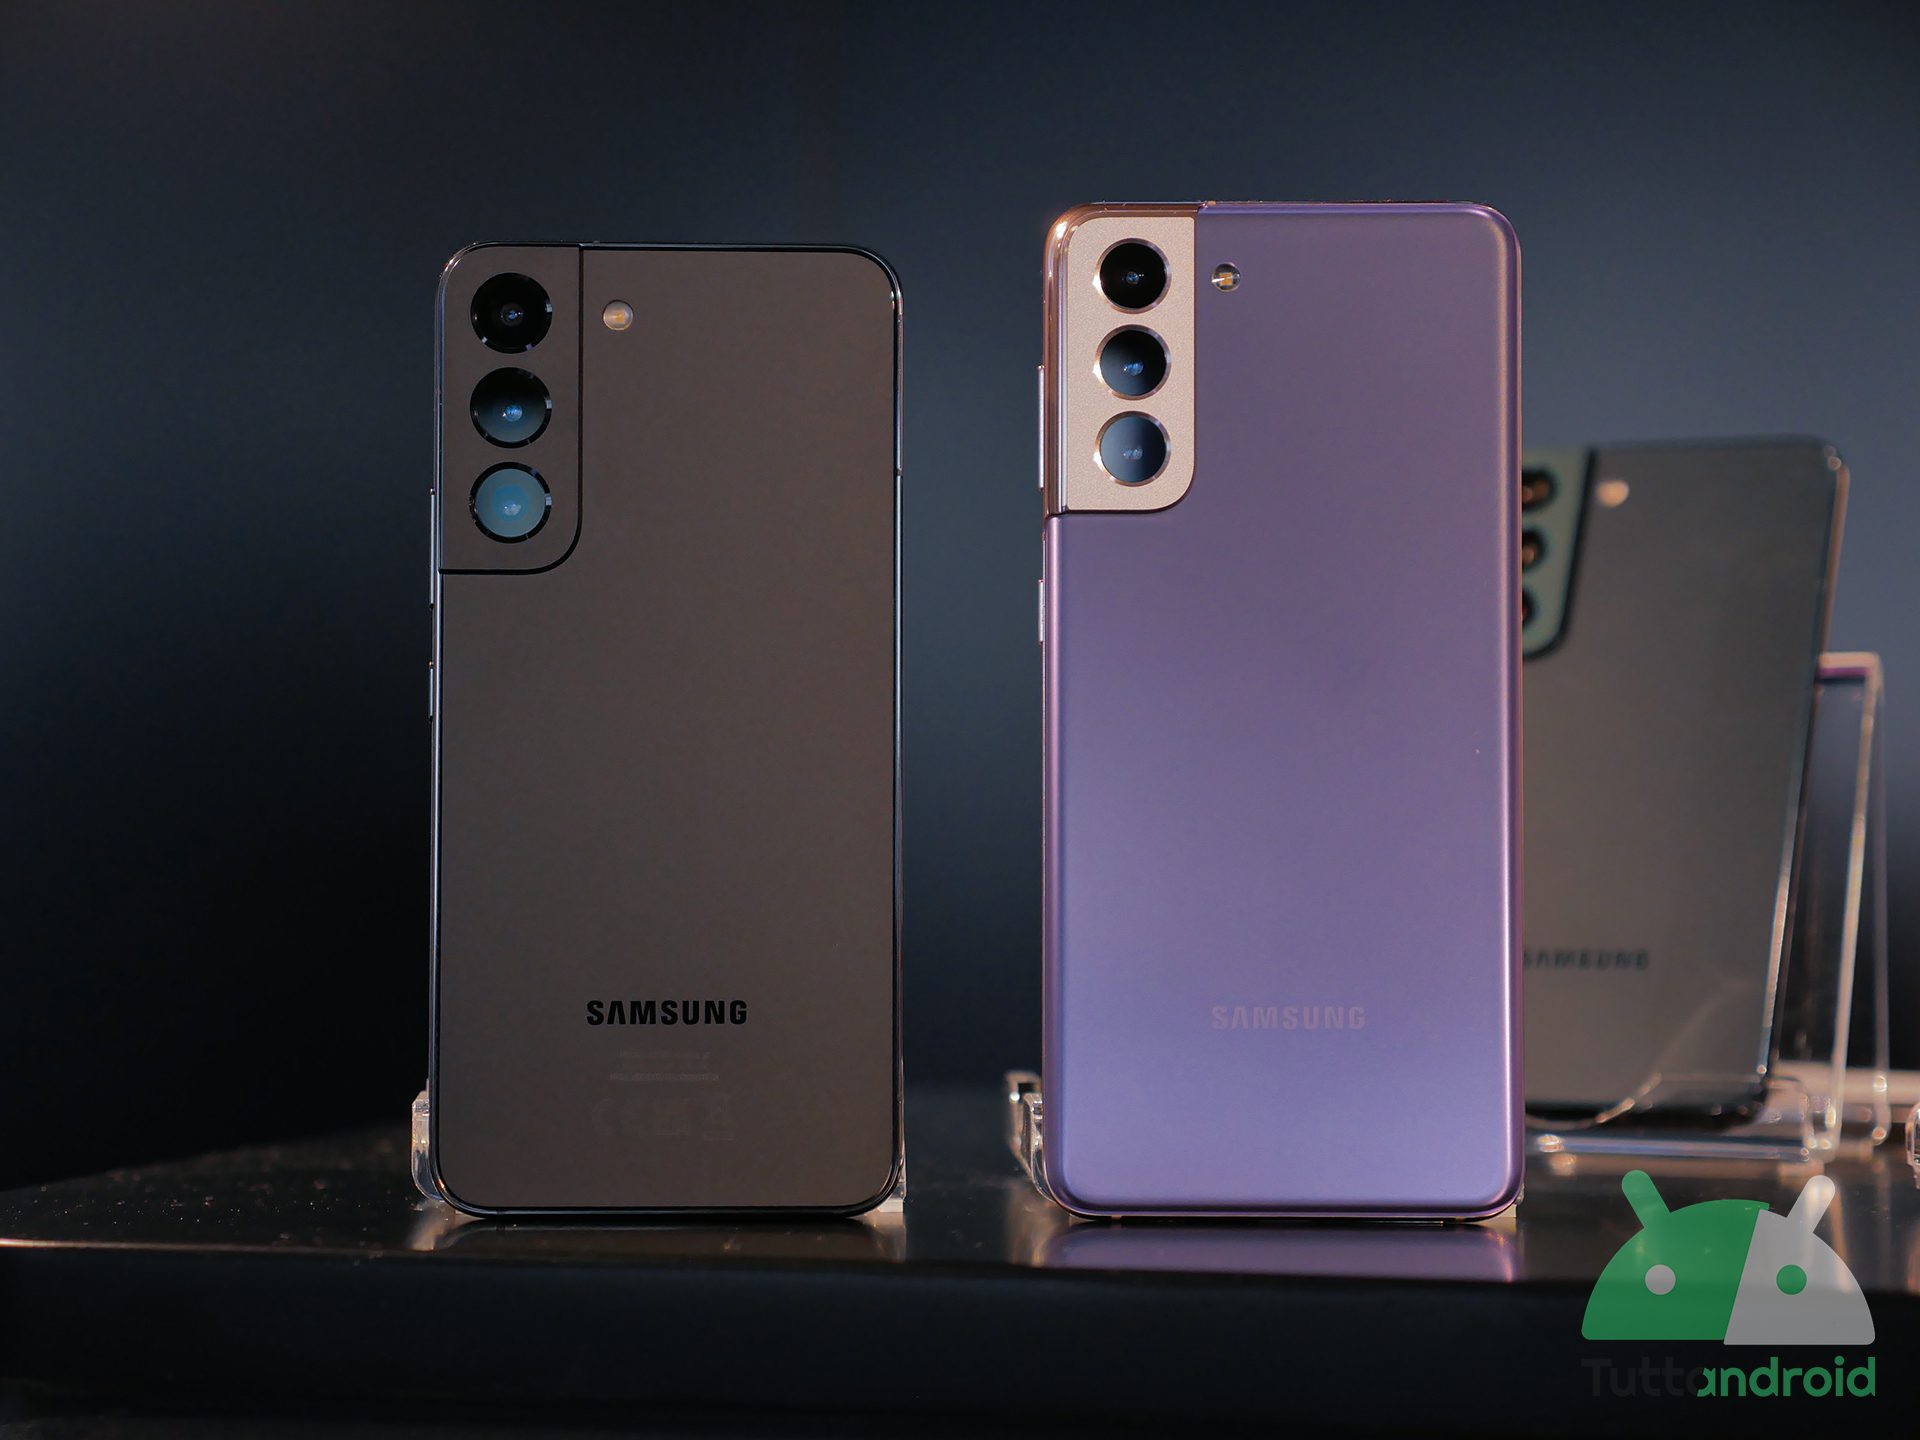 Samsung galaxy s22